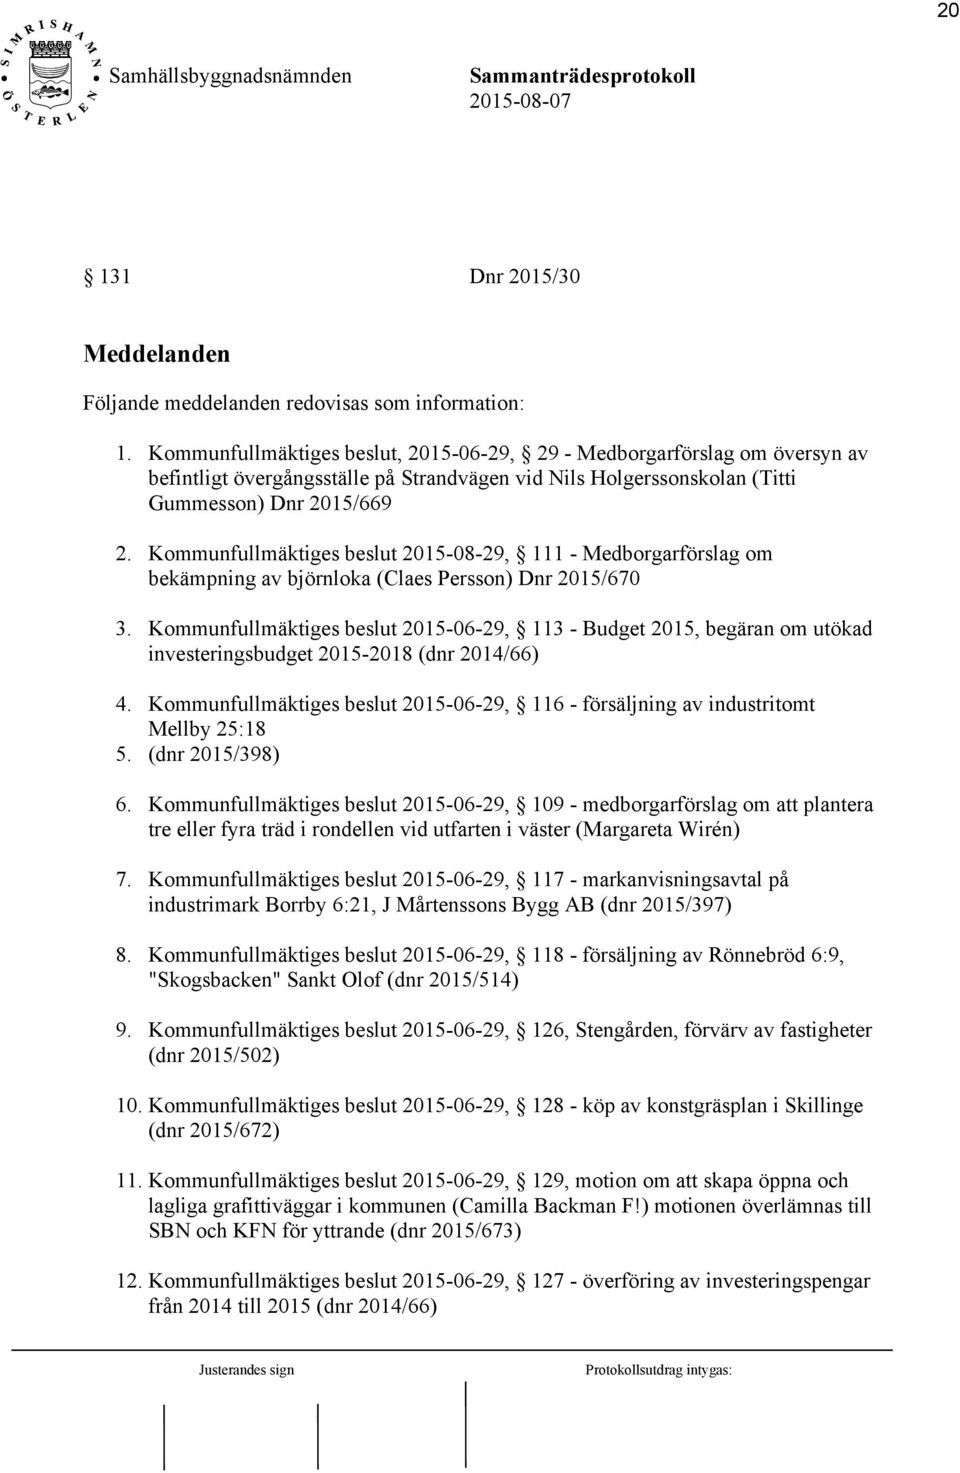 Kommunfullmäktiges beslut 2015-08-29, 111 - Medborgarförslag om bekämpning av björnloka (Claes Persson) Dnr 2015/670 3.